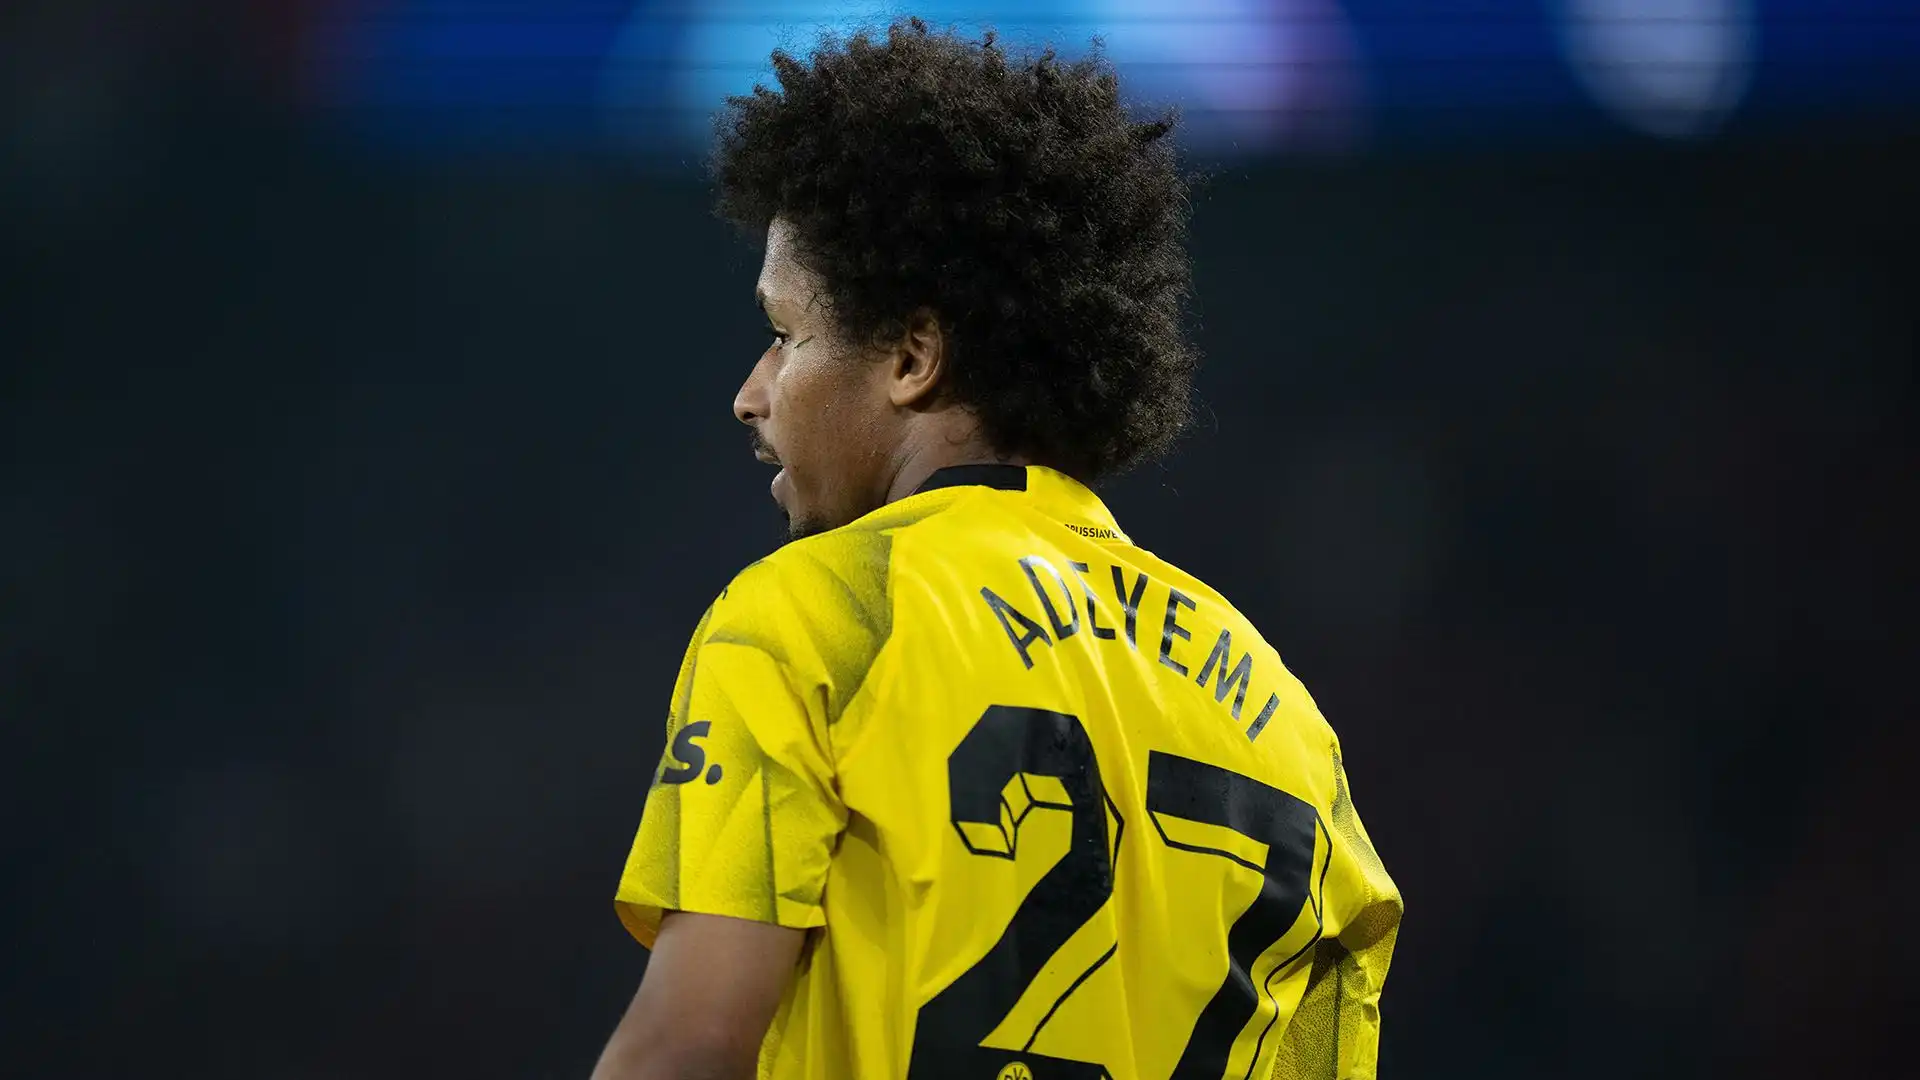 Adeyemi nell'ultima stagione ha segnato 5 gol e servito 2 assist